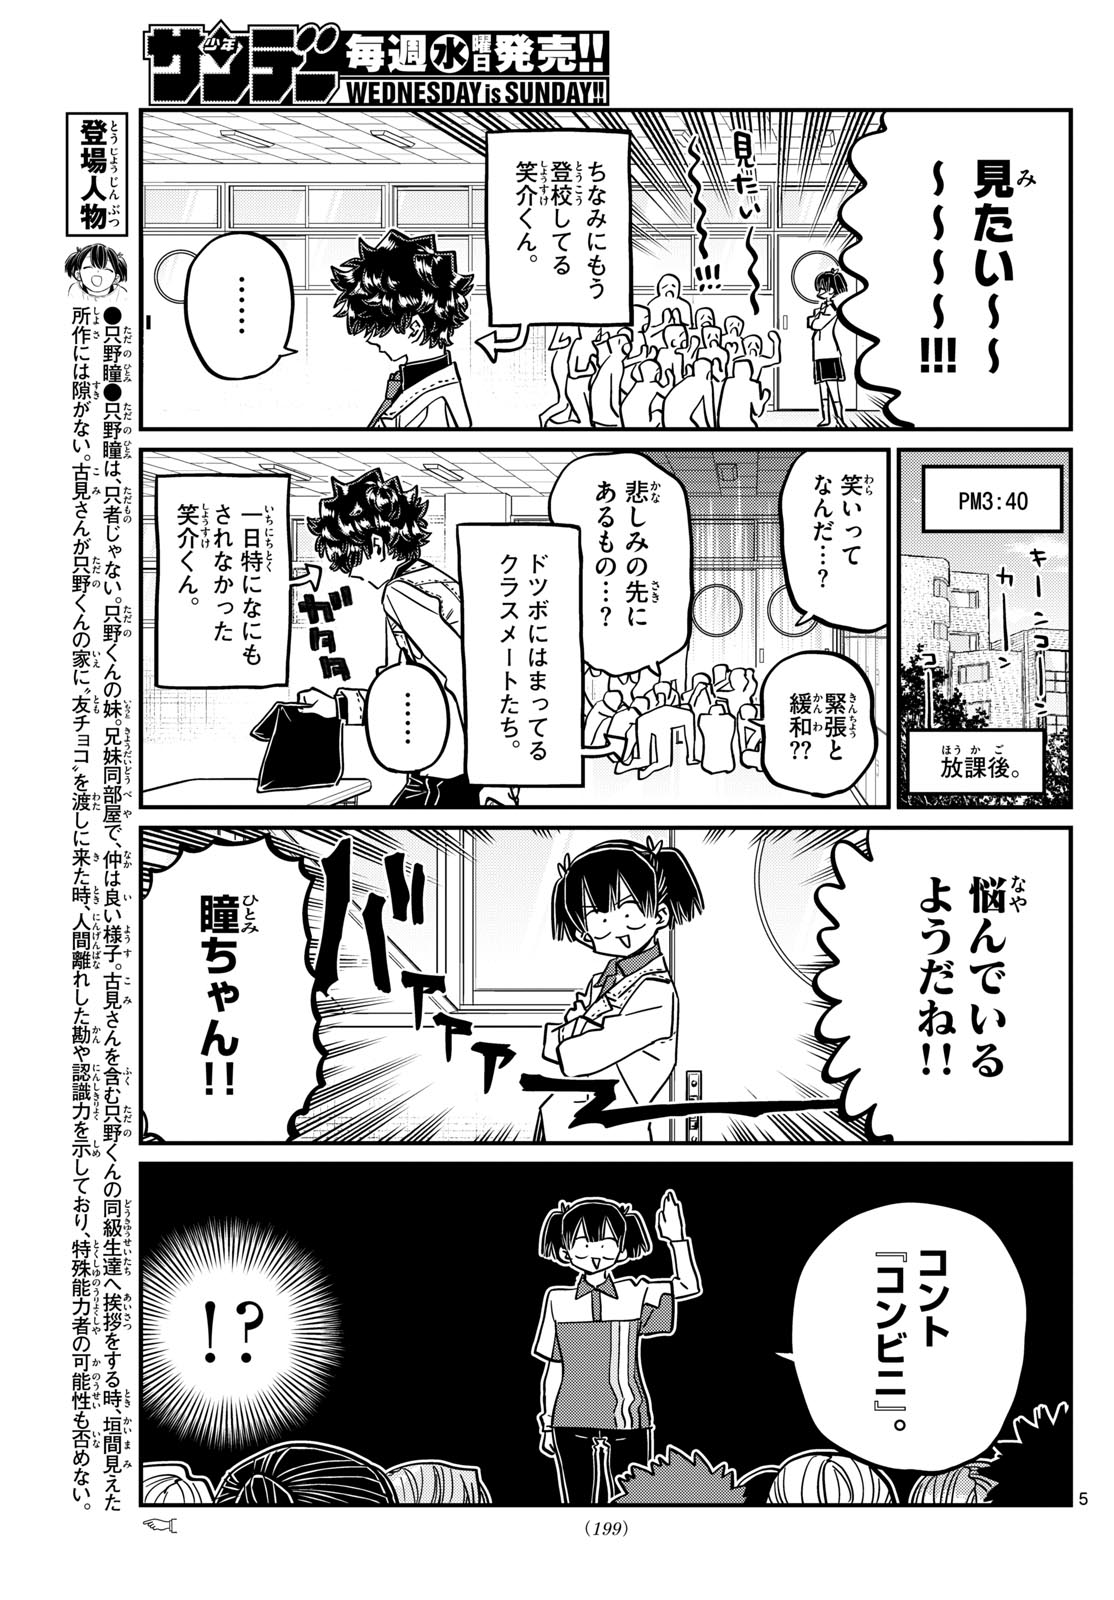 Komi-san wa Komyushou Desu - Chapter 460 - Page 5